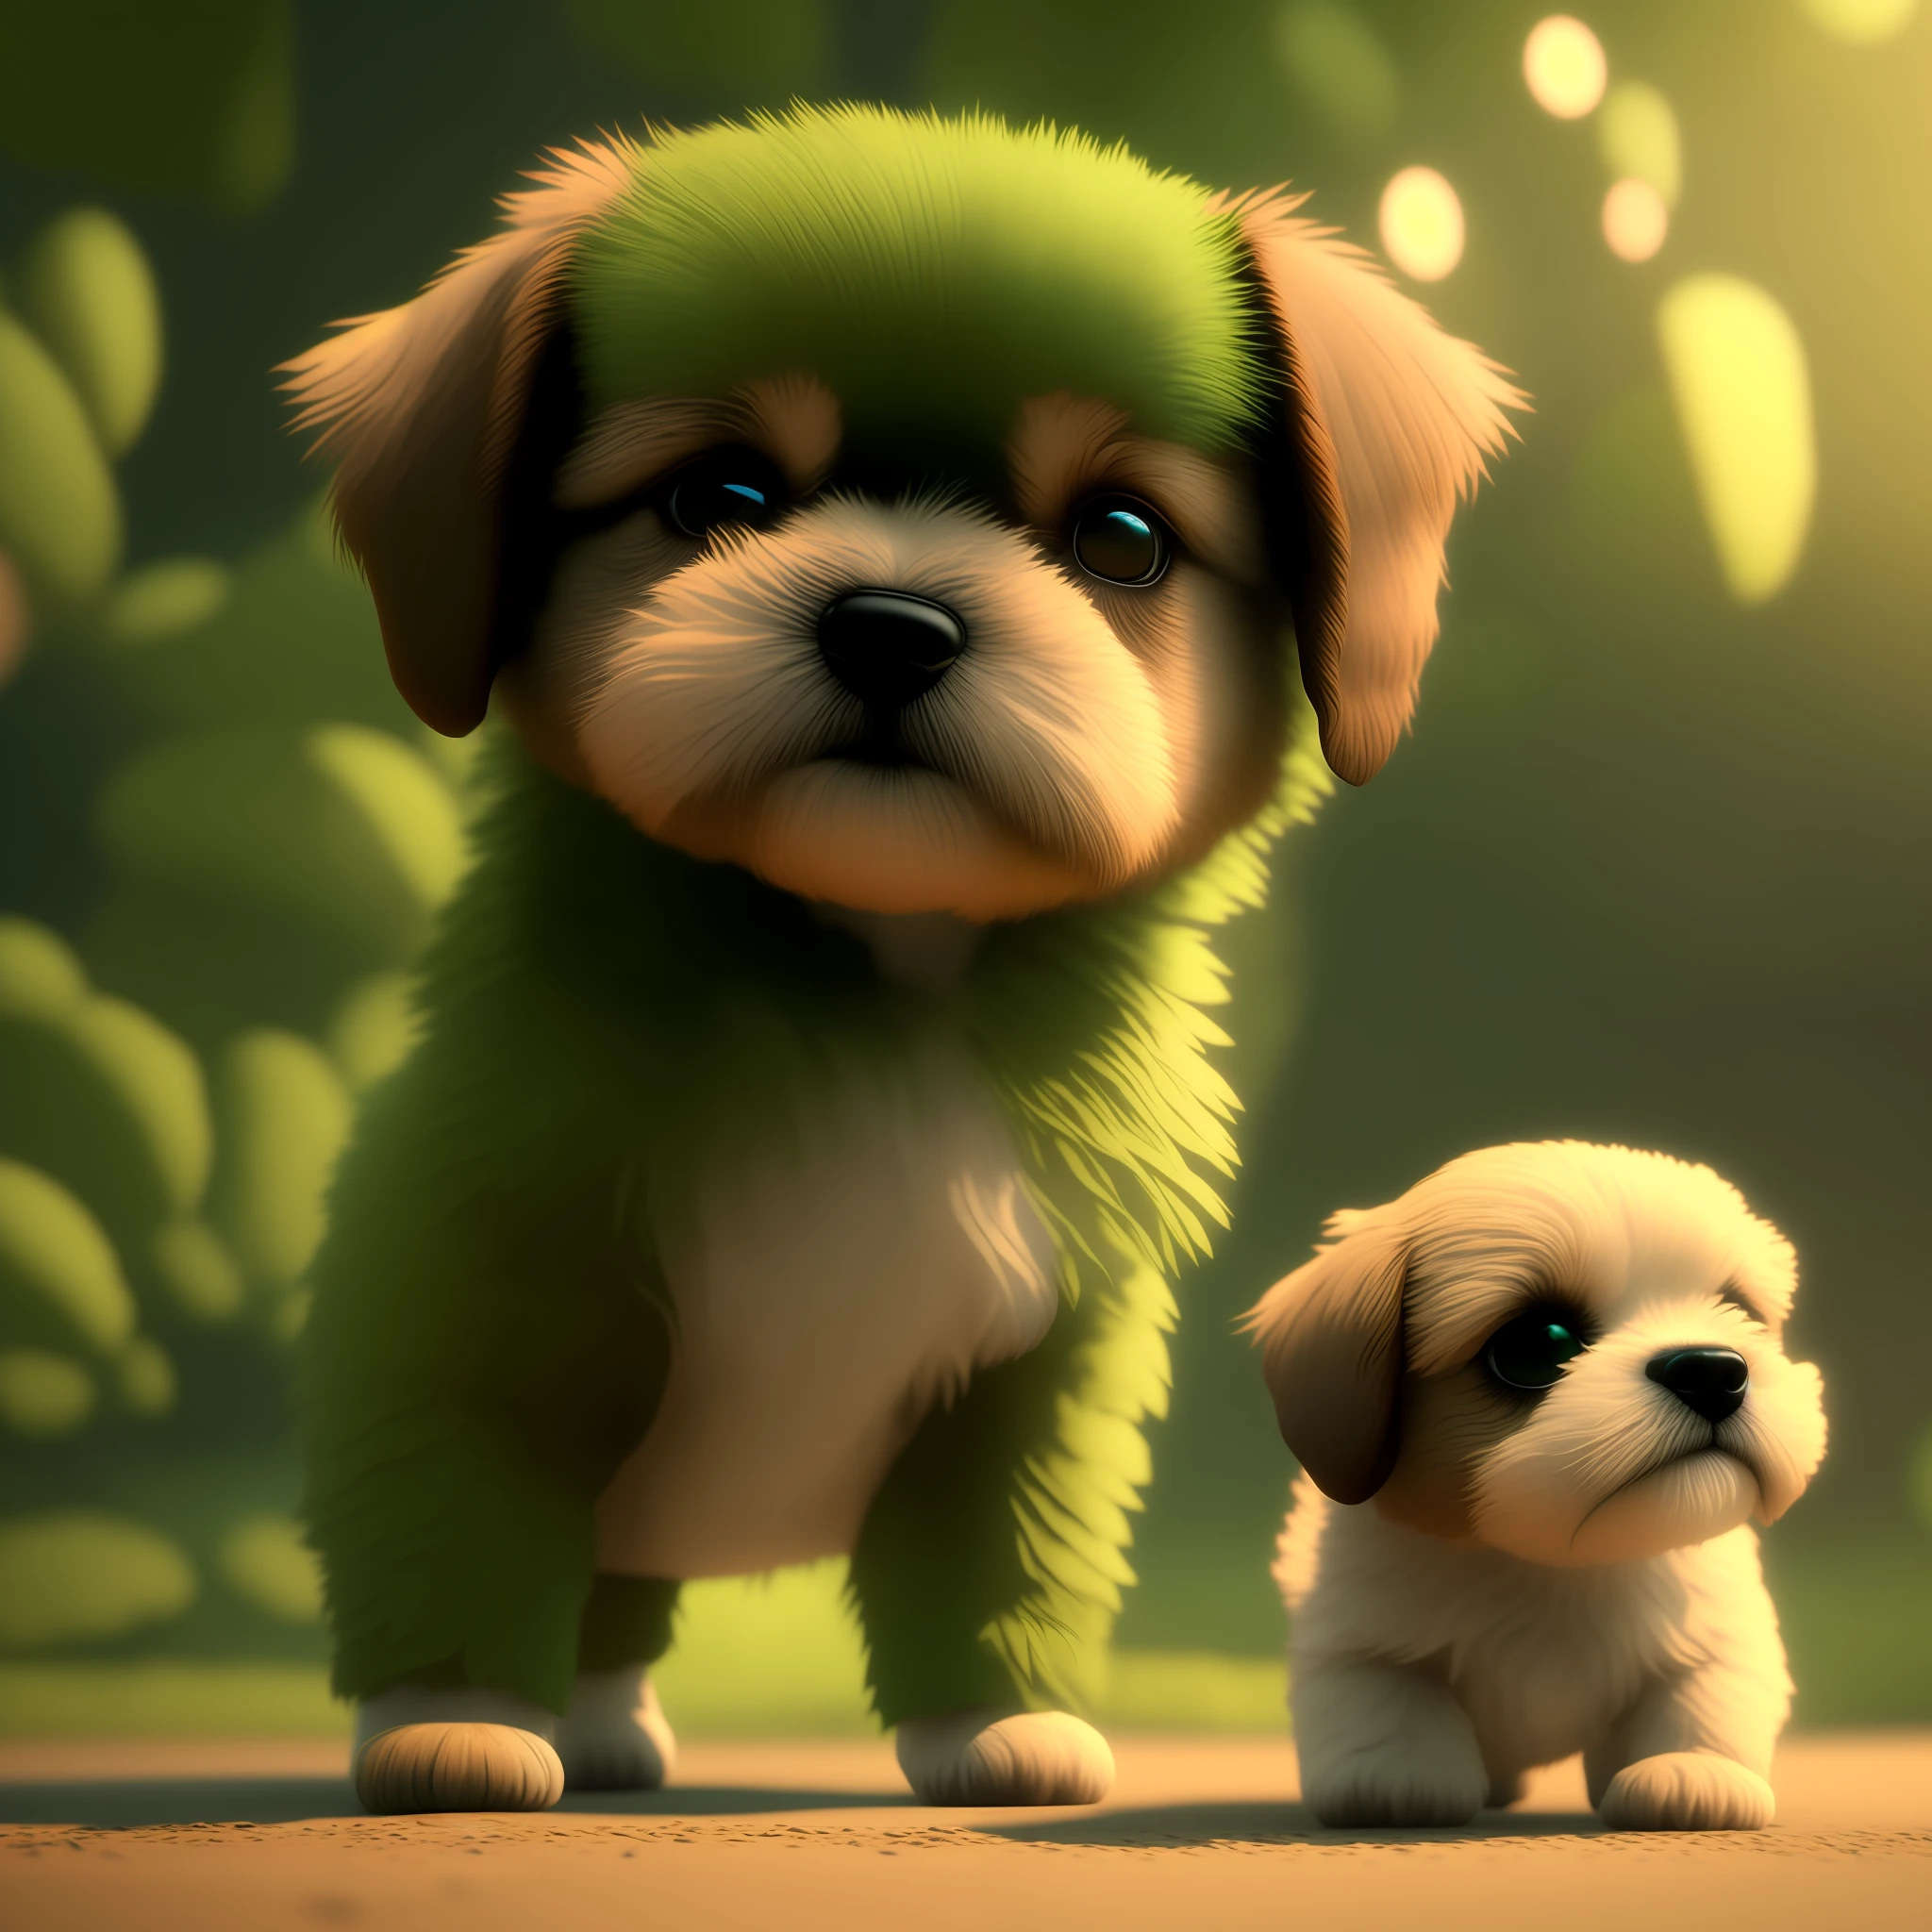 Filhote de cachorro shitzu, cachorro tem cor marrom com parte brancas, pelo longo, olhos verdes claros, efeito pixart, cinema, 8K